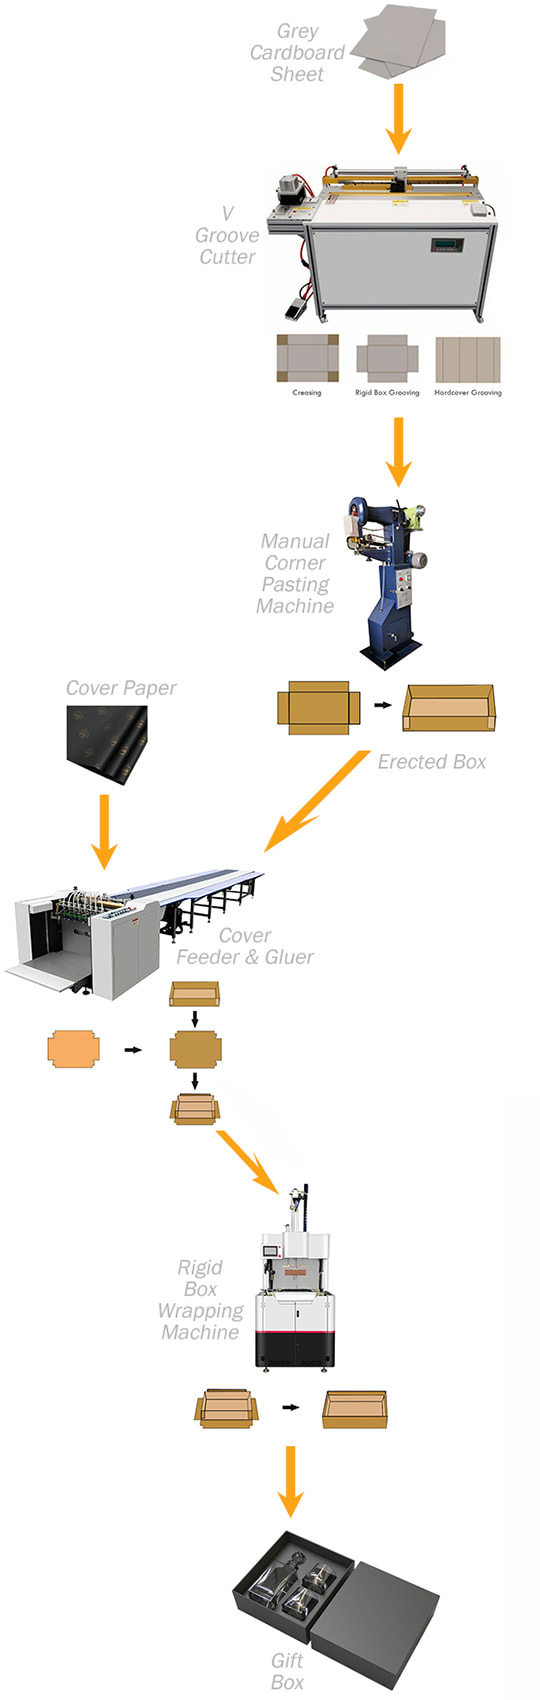 Rigid Box Making Machine - Packaging Machine - 4